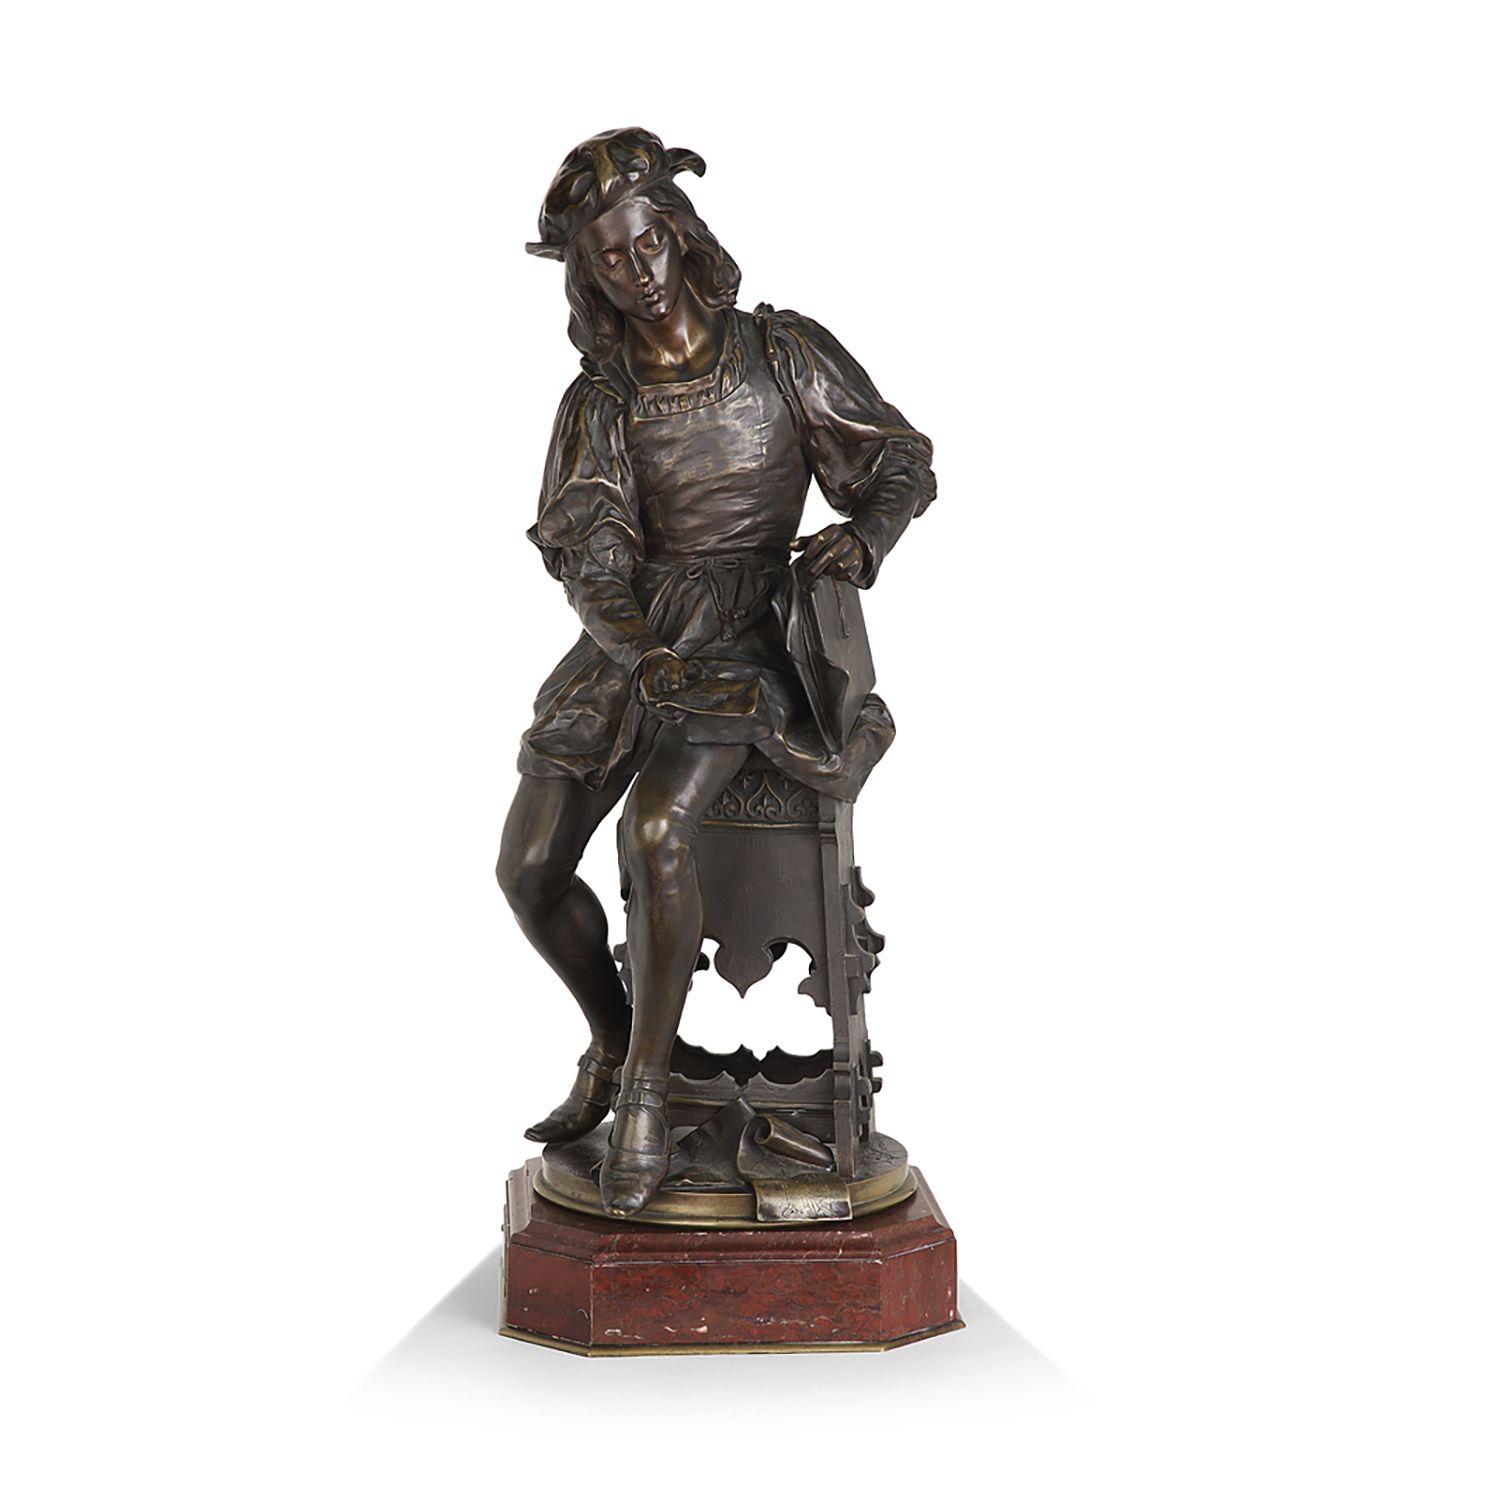 Null 伊波利特-莫罗(1832-1926)

恋爱中的Raphaël

青铜色，带有对比强烈的棕色铜锈

签名

旋转式大理石支架

带有棕色铜锈的青铜器；&hellip;